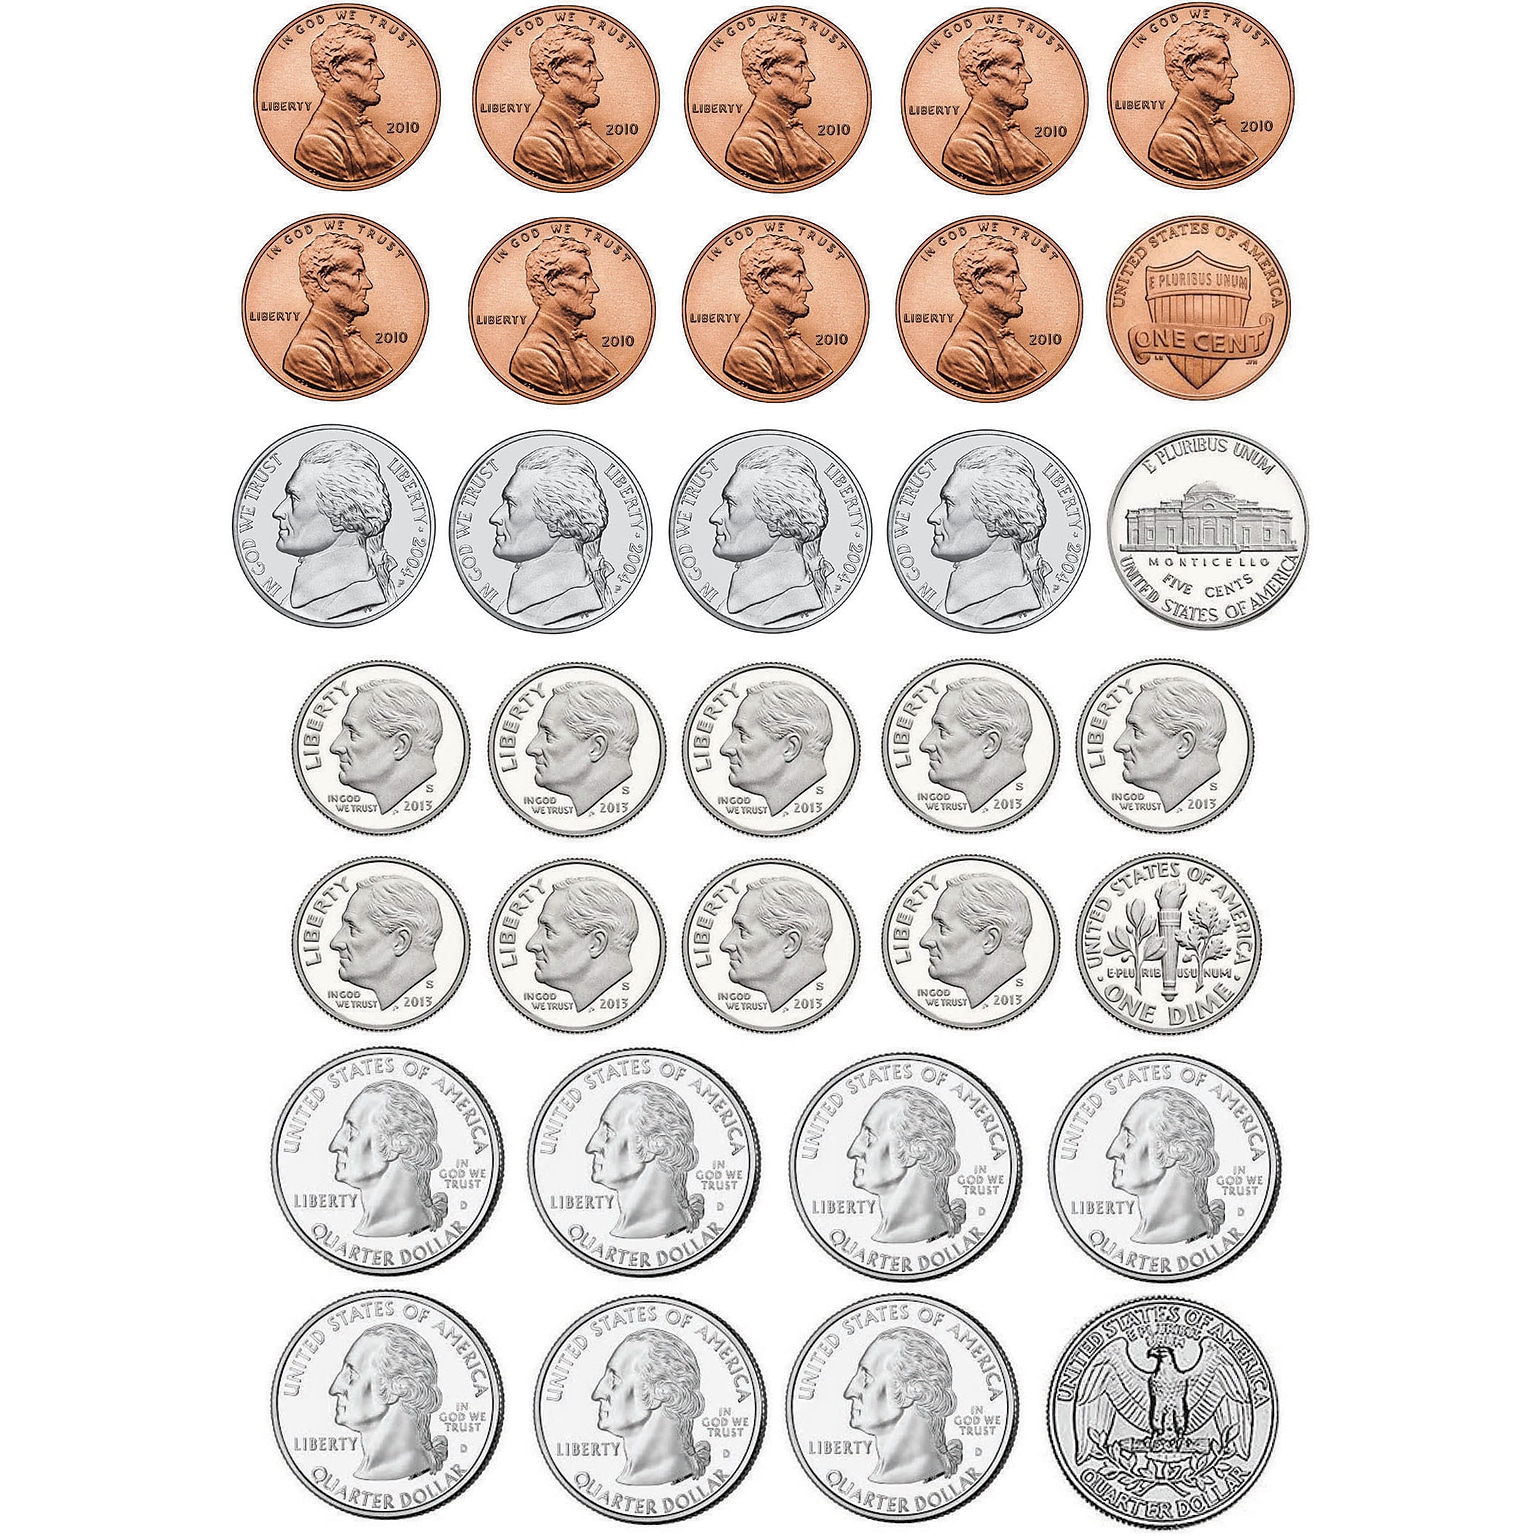 Ashley Math Die Cut Magnet, U.S. Coins, 5/Pack (ASH10067)